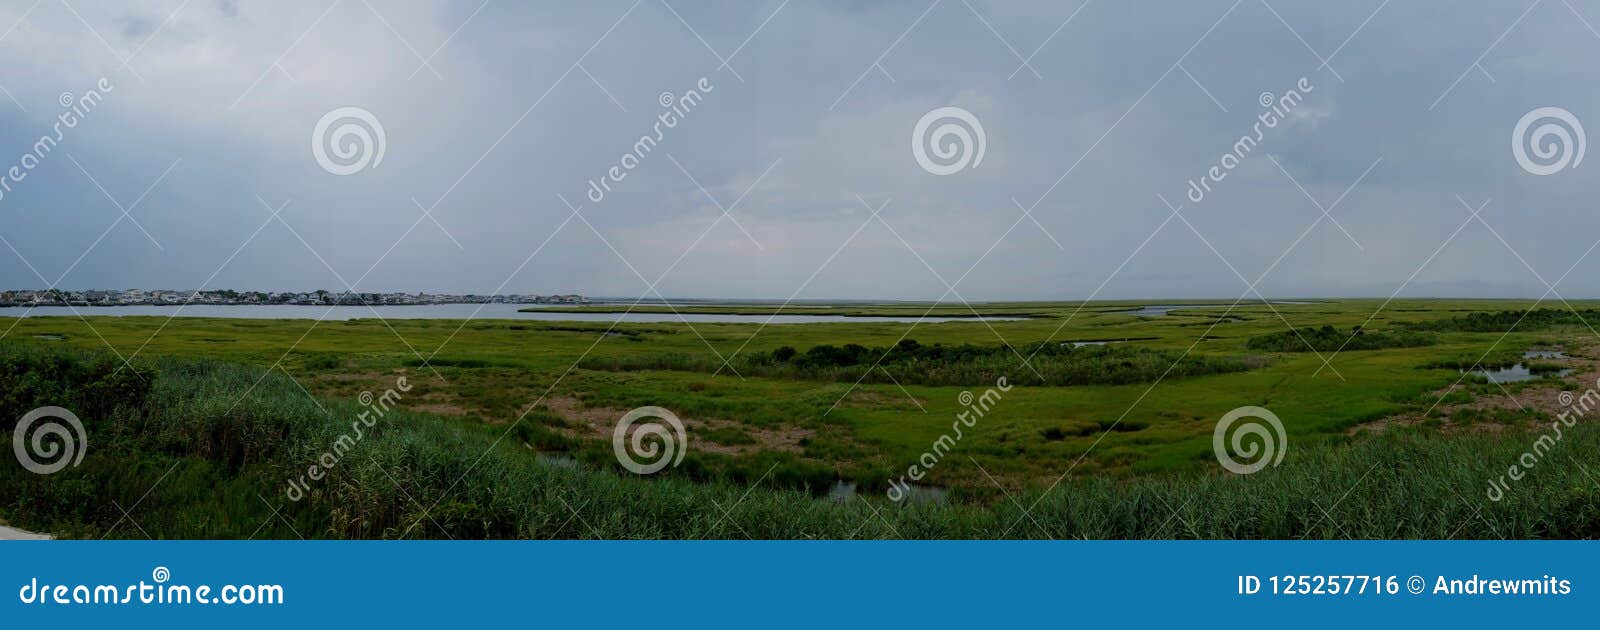 brigantine bay marsh and tidal wetlands panorama